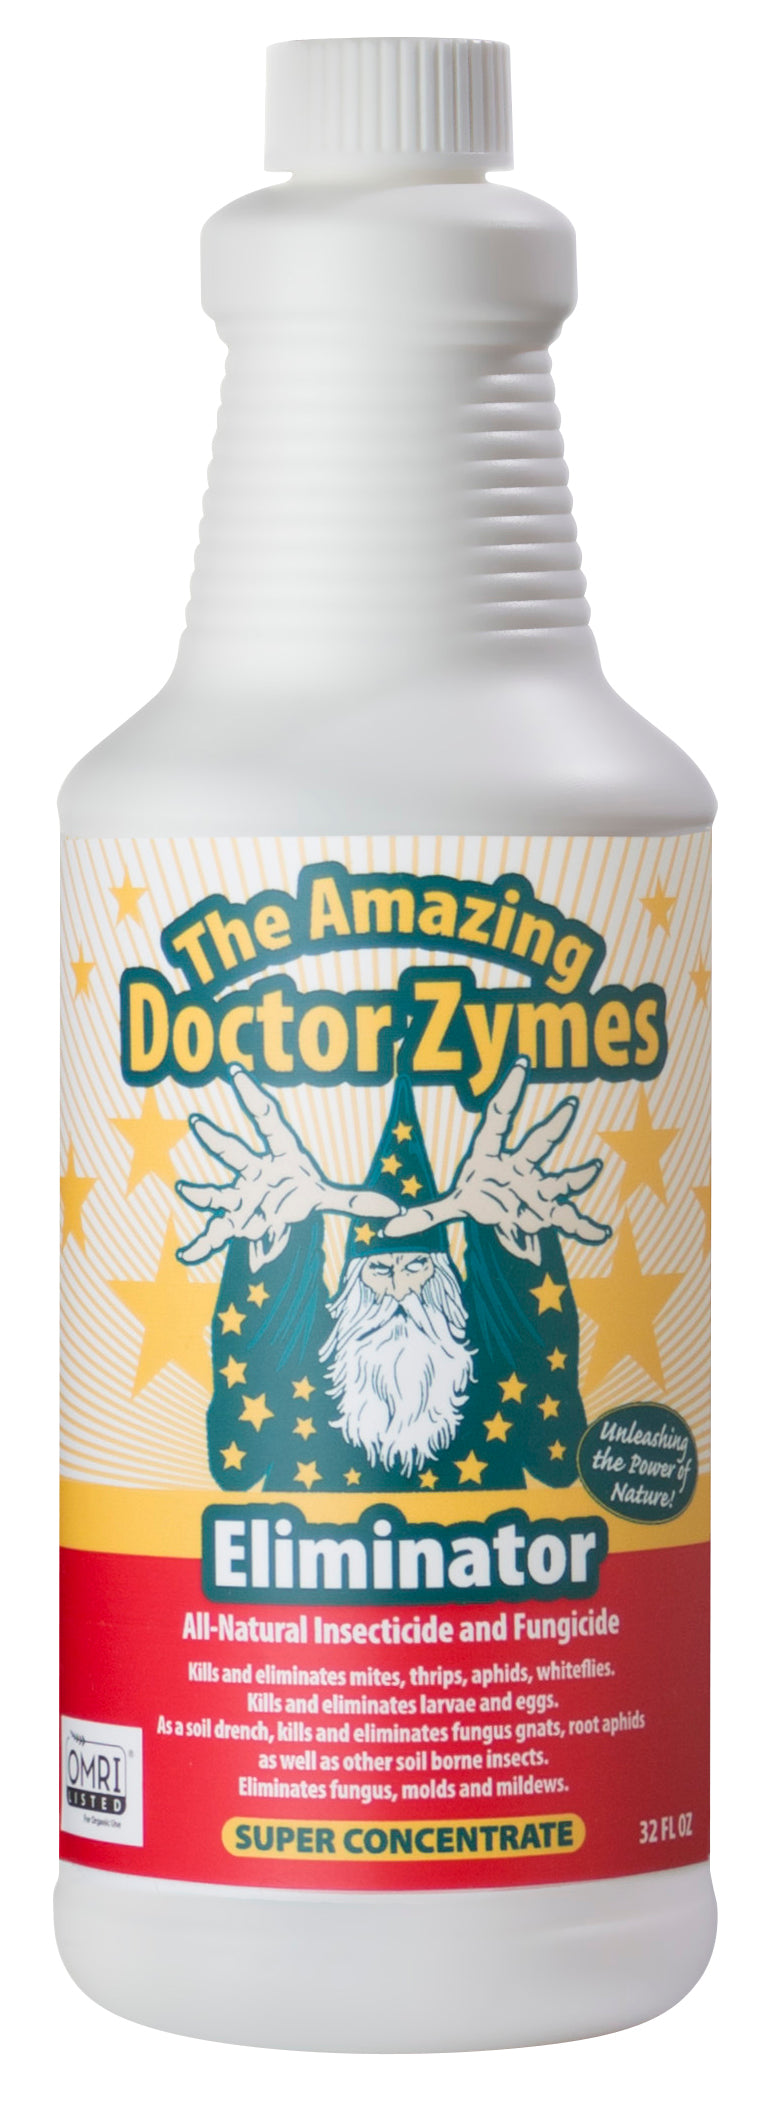 The Amazing Doctor Zymes Eliminator 1 Quart